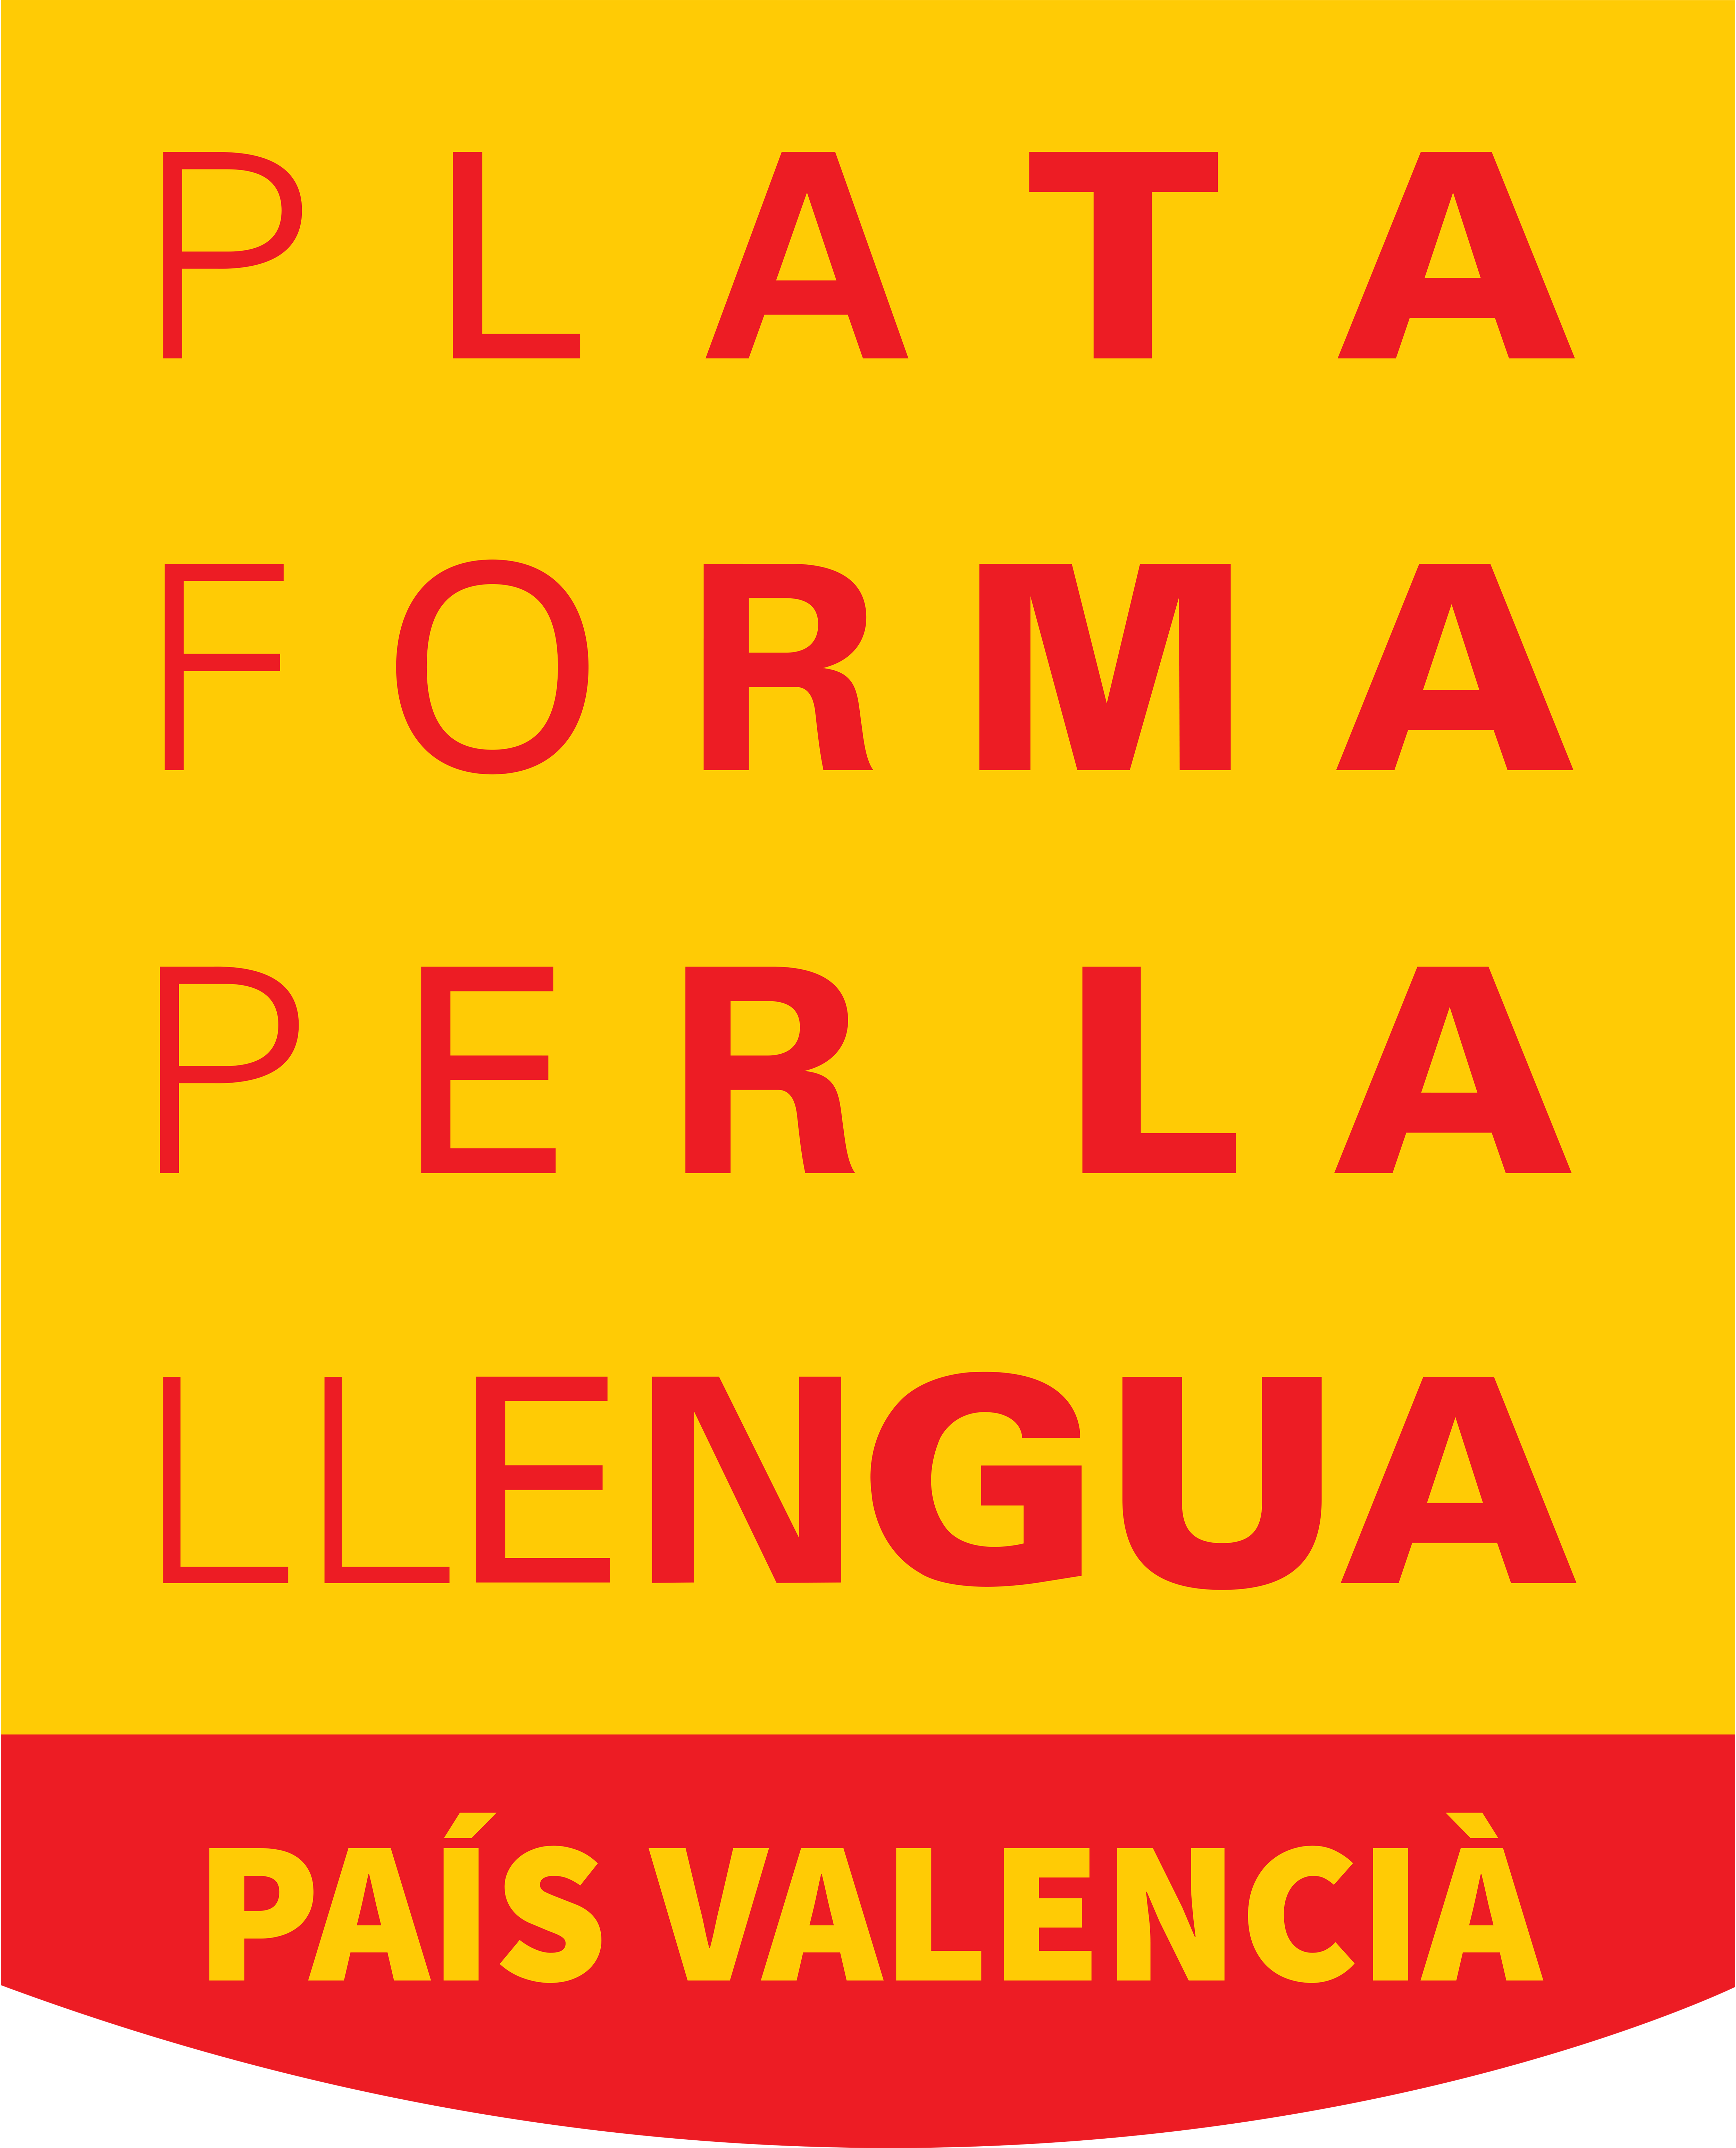 PL_LOGO_PAIS-VALENCIA_RGB_PRINCIPAL